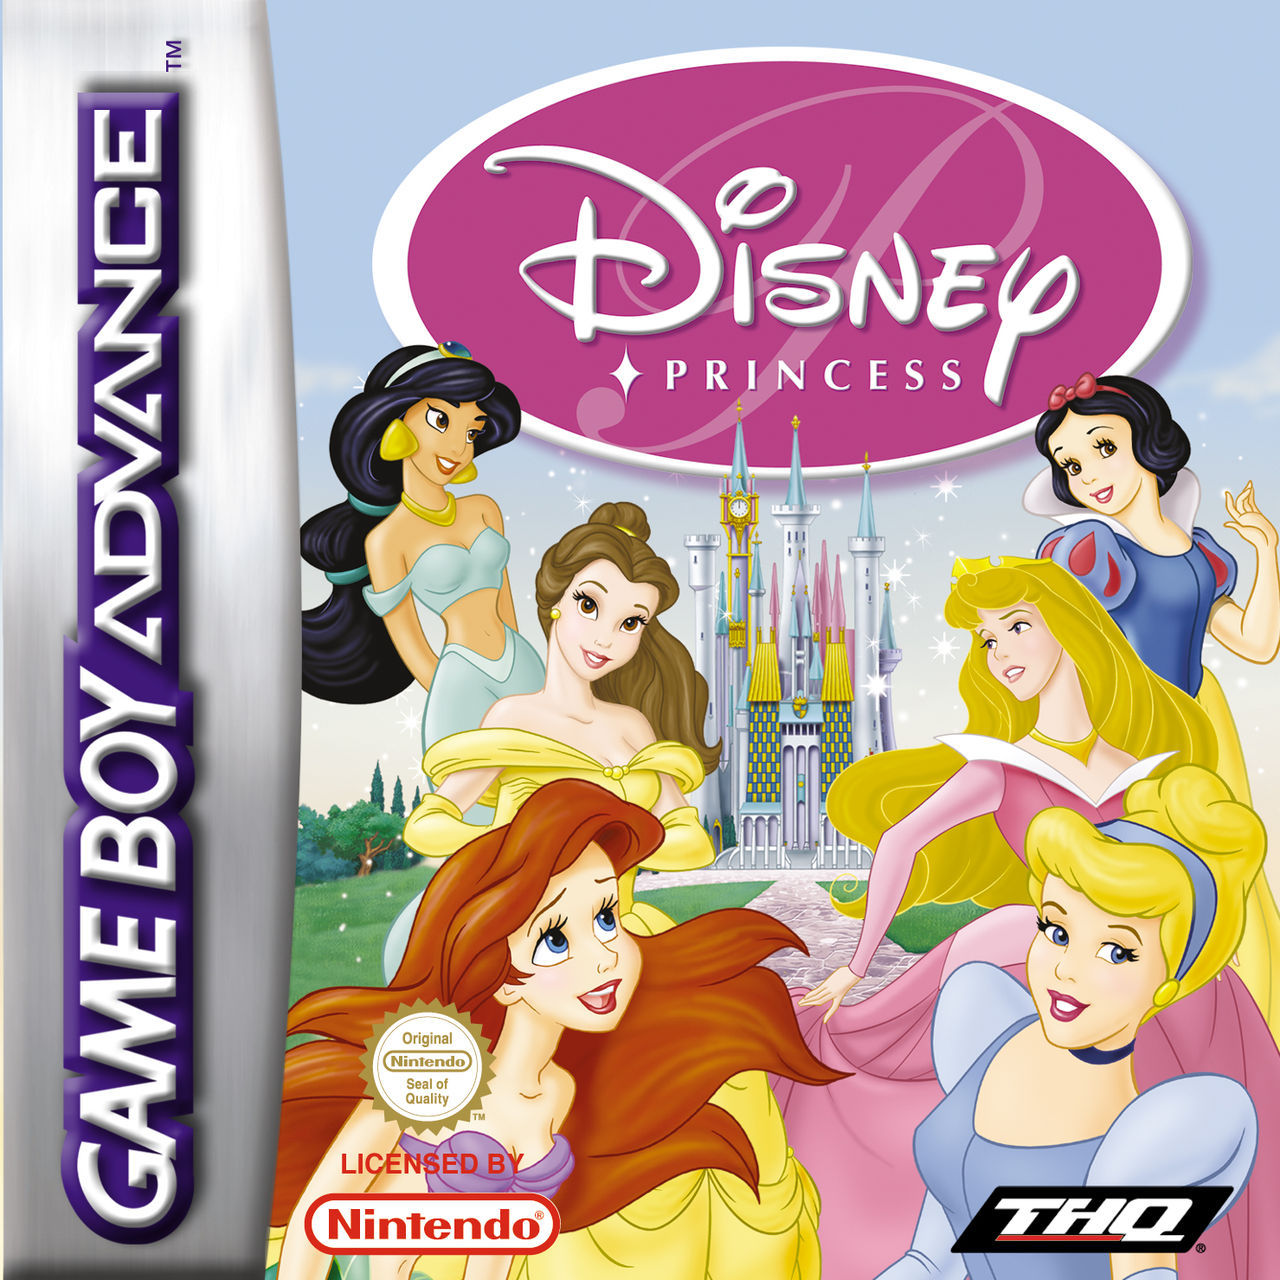 Disney Videojuego (Game Boy Advance) - Vandal